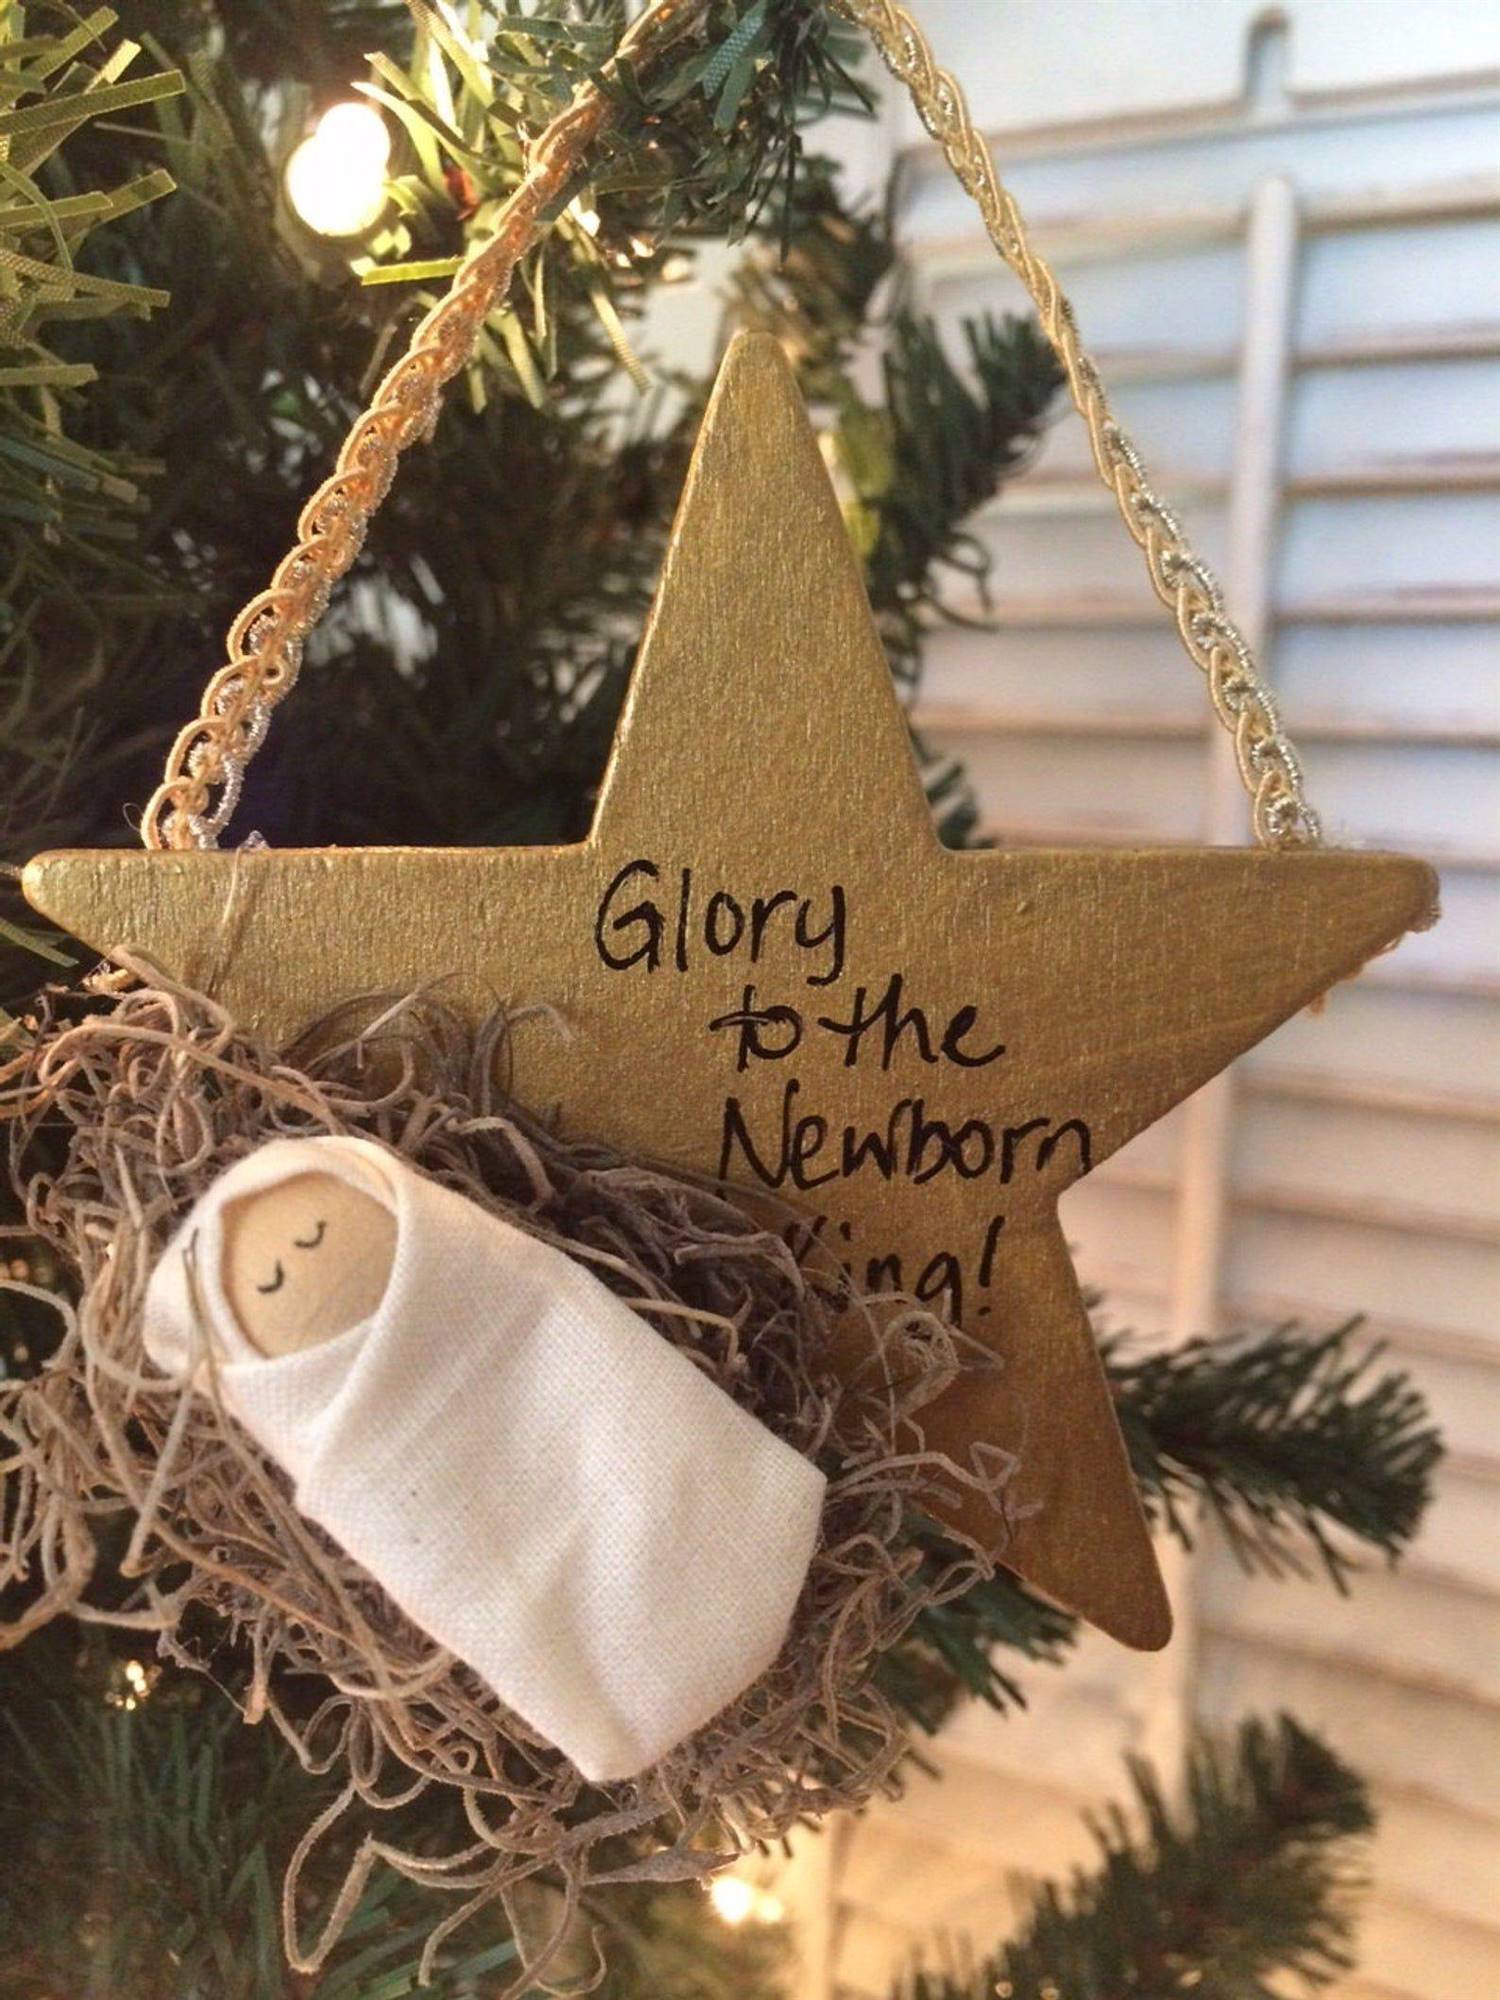 Adorno con niño Jesús para el árbol de Navidad en Pinterest.